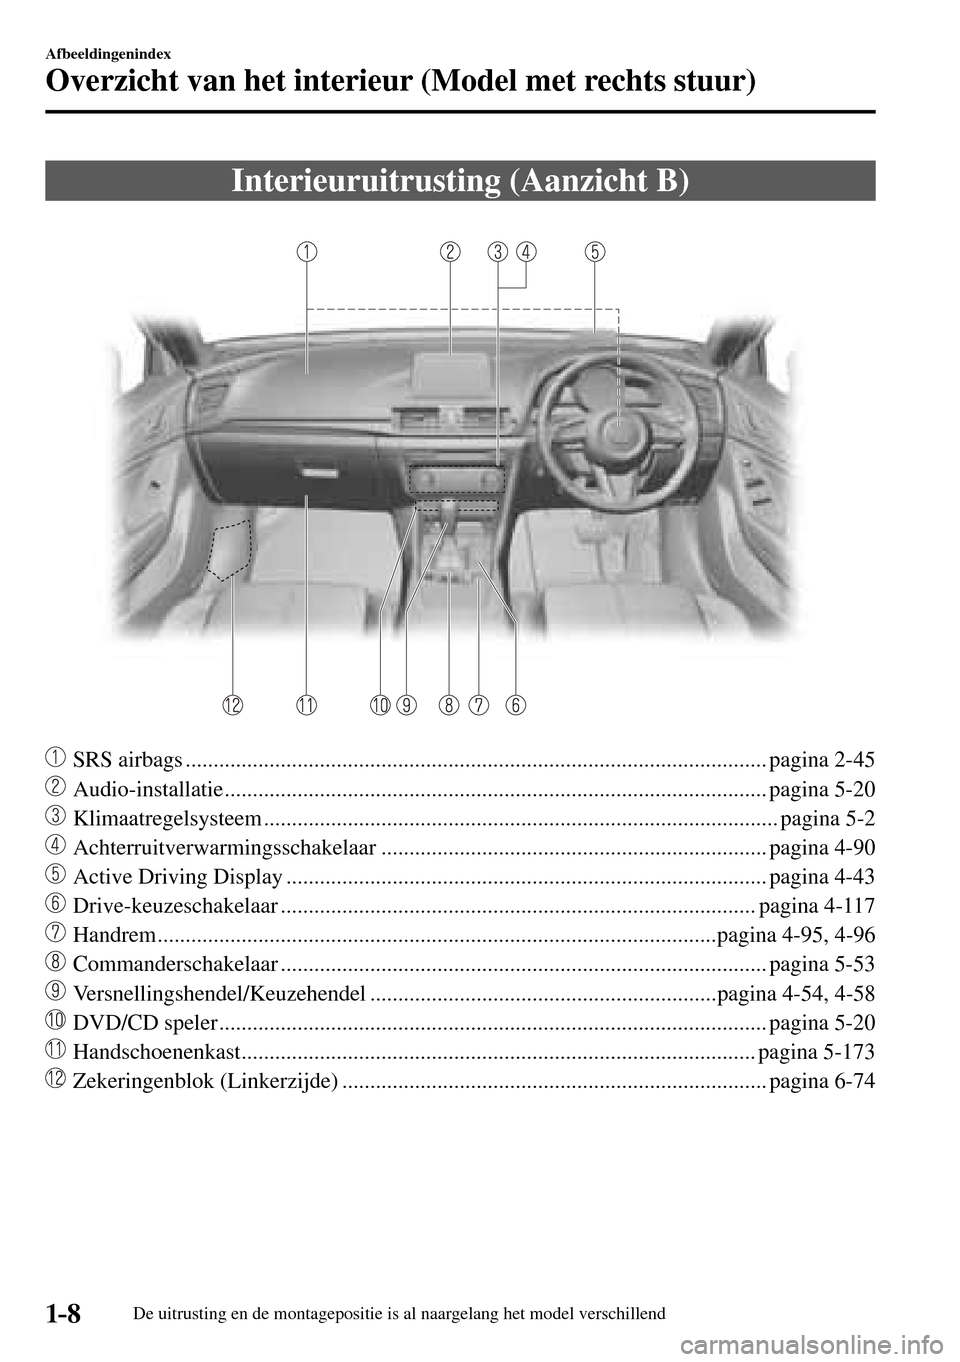 MAZDA MODEL 3 HATCHBACK 2016  Handleiding (in Dutch) 1–8
Afbeeldingenindex
Overzicht van het interieur (Model met rechts stuur)
De uitrusting en de montagepositie is al naargelang het model verschillend
 Interieuruitrusting (Aanzicht B)
     SRS airba